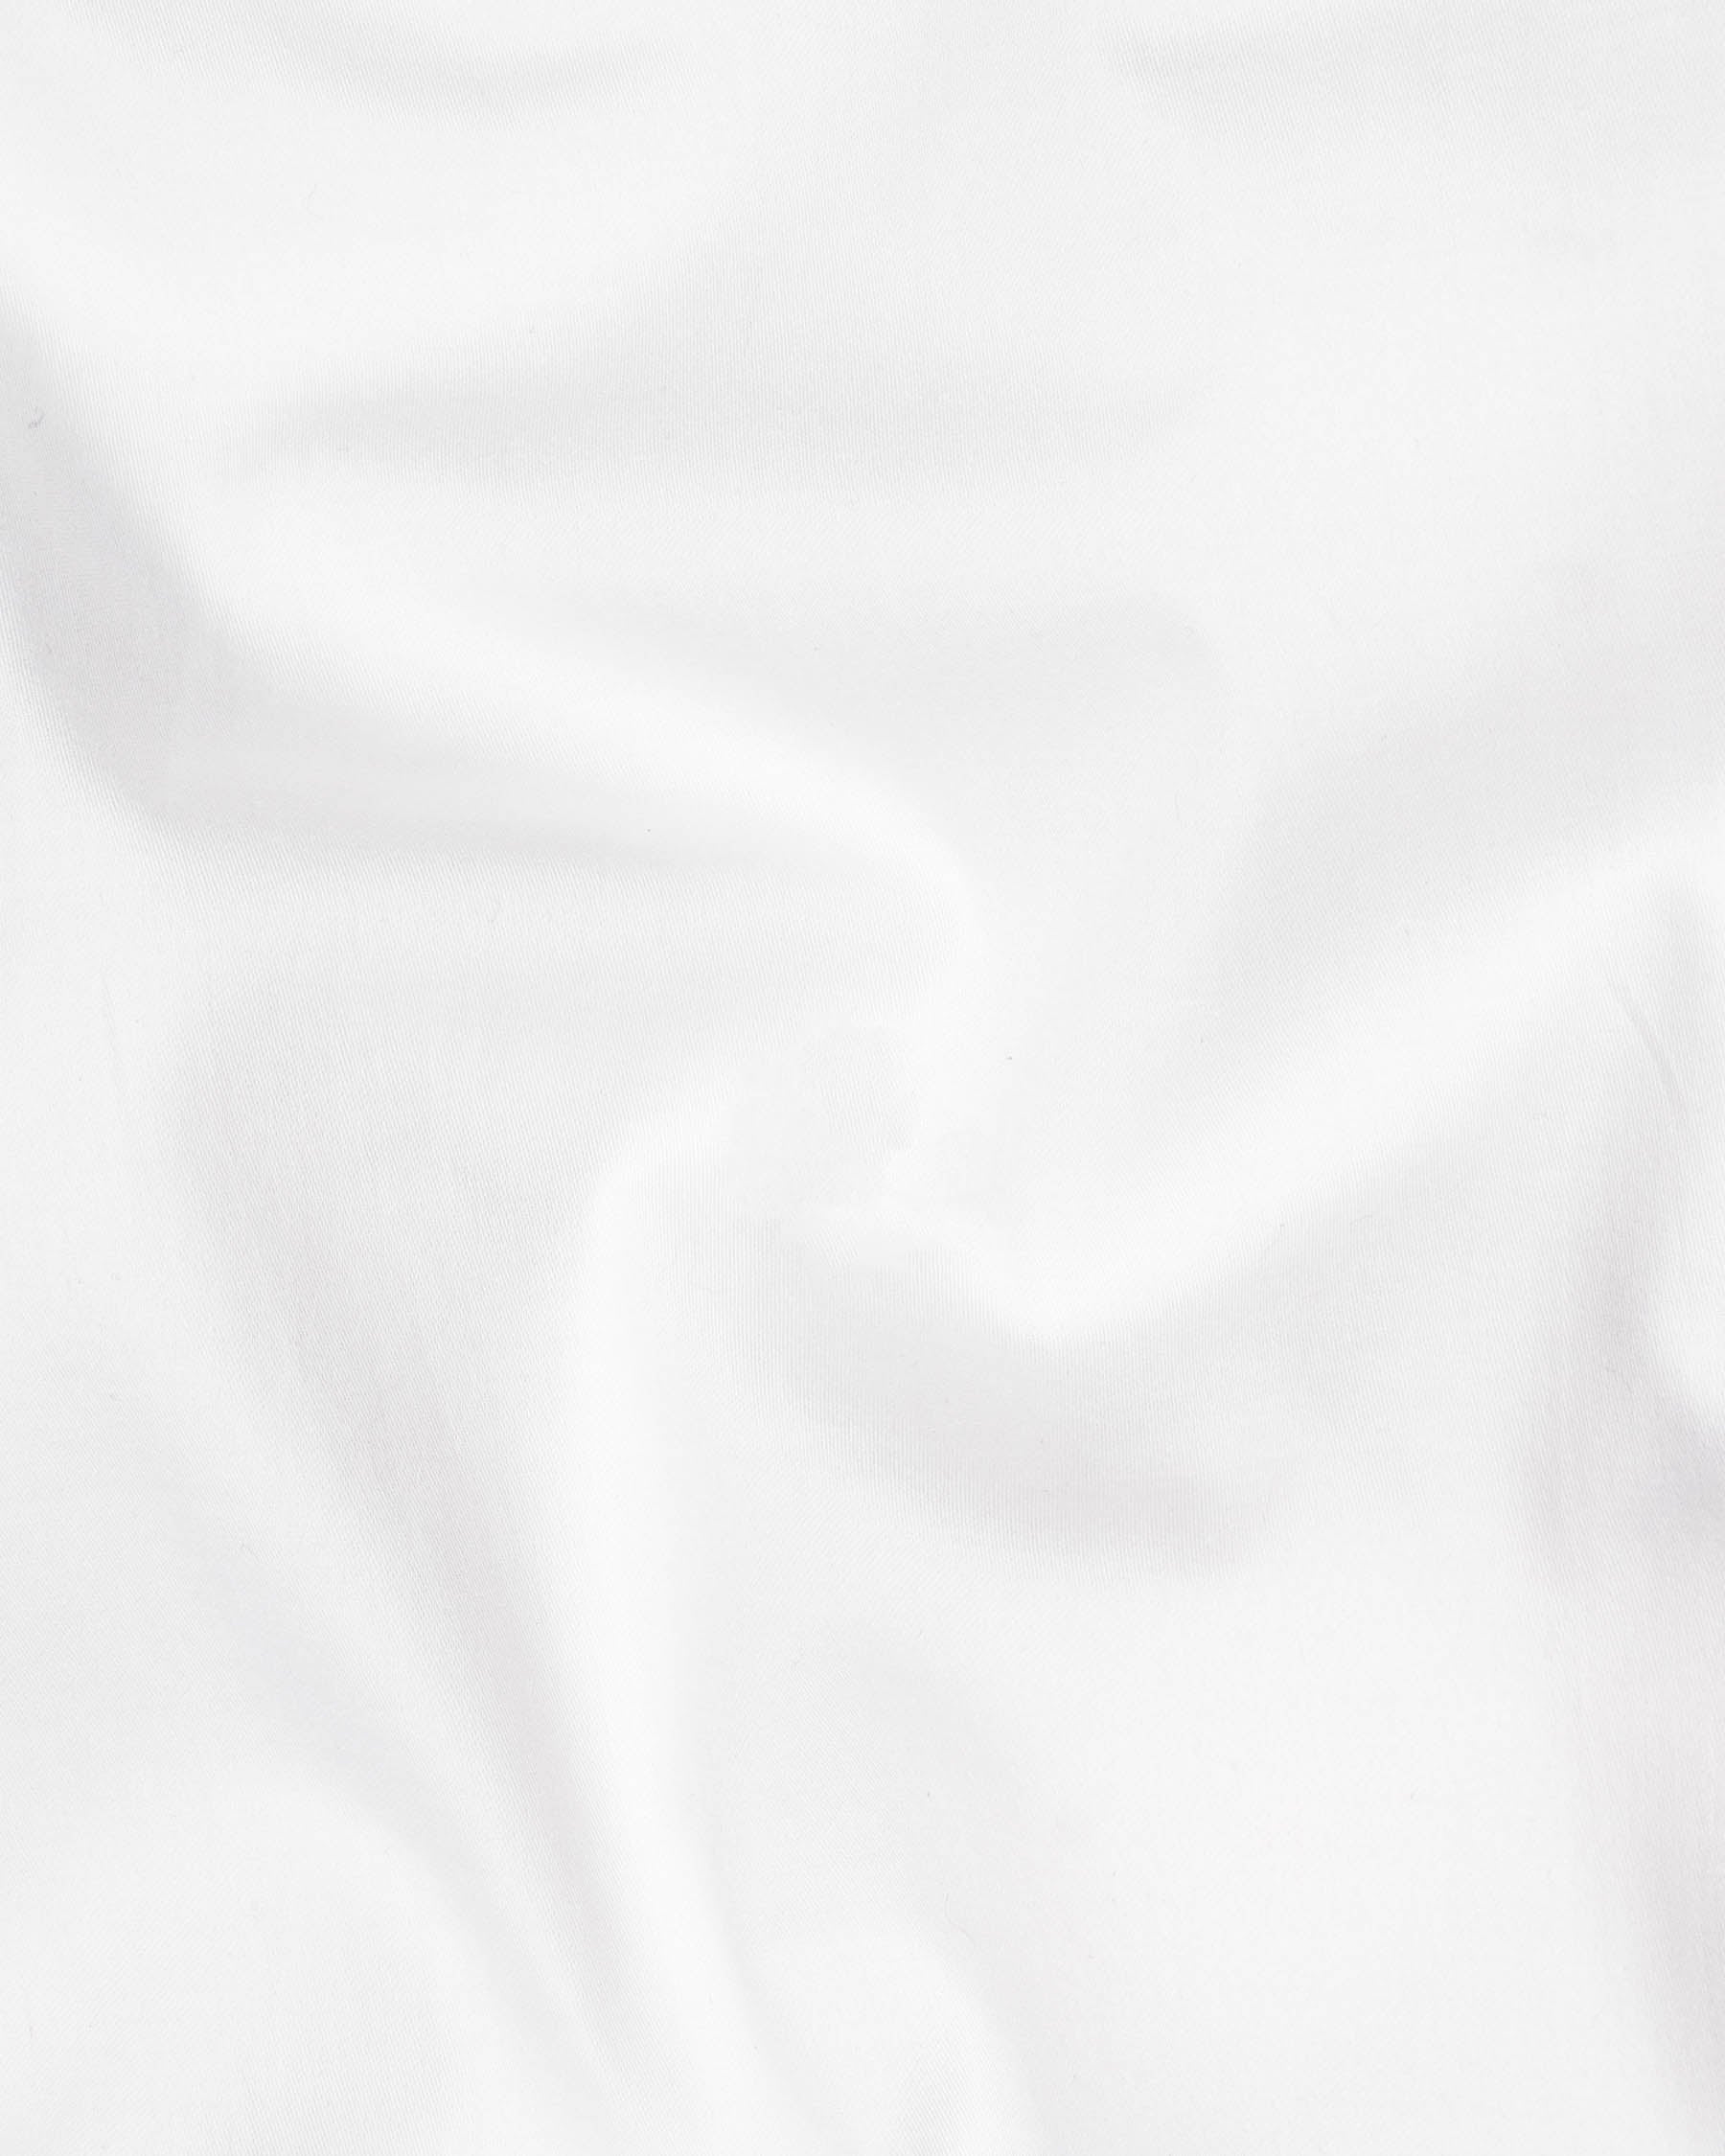 Bright White with double black Subtle Sheen Strapped Super Soft Premium Cotton Shirt 6515-BLK-P120-38,6515-BLK-P120-H-38,6515-BLK-P120-39,6515-BLK-P120-H-39,6515-BLK-P120-40,6515-BLK-P120-H-40,6515-BLK-P120-42,6515-BLK-P120-H-42,6515-BLK-P120-44,6515-BLK-P120-H-44,6515-BLK-P120-46,6515-BLK-P120-H-46,6515-BLK-P120-48,6515-BLK-P120-H-48,6515-BLK-P120-50,6515-BLK-P120-H-50,6515-BLK-P120-52,6515-BLK-P120-H-52